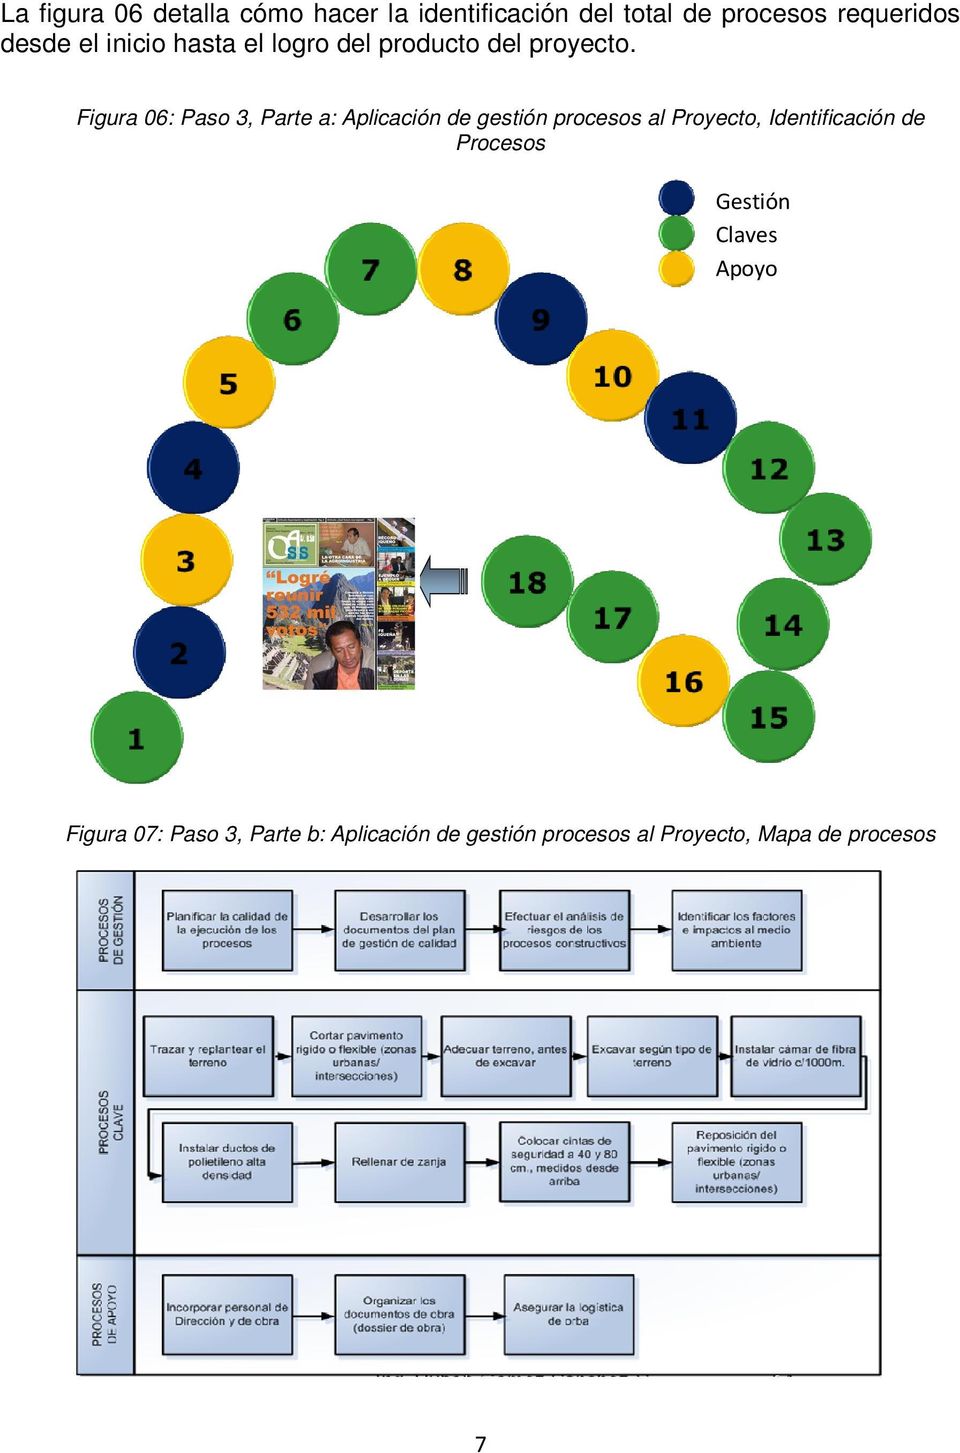 Figura 06: Paso 3, Parte a: Aplicación de gestión procesos al Proyecto, Identificación